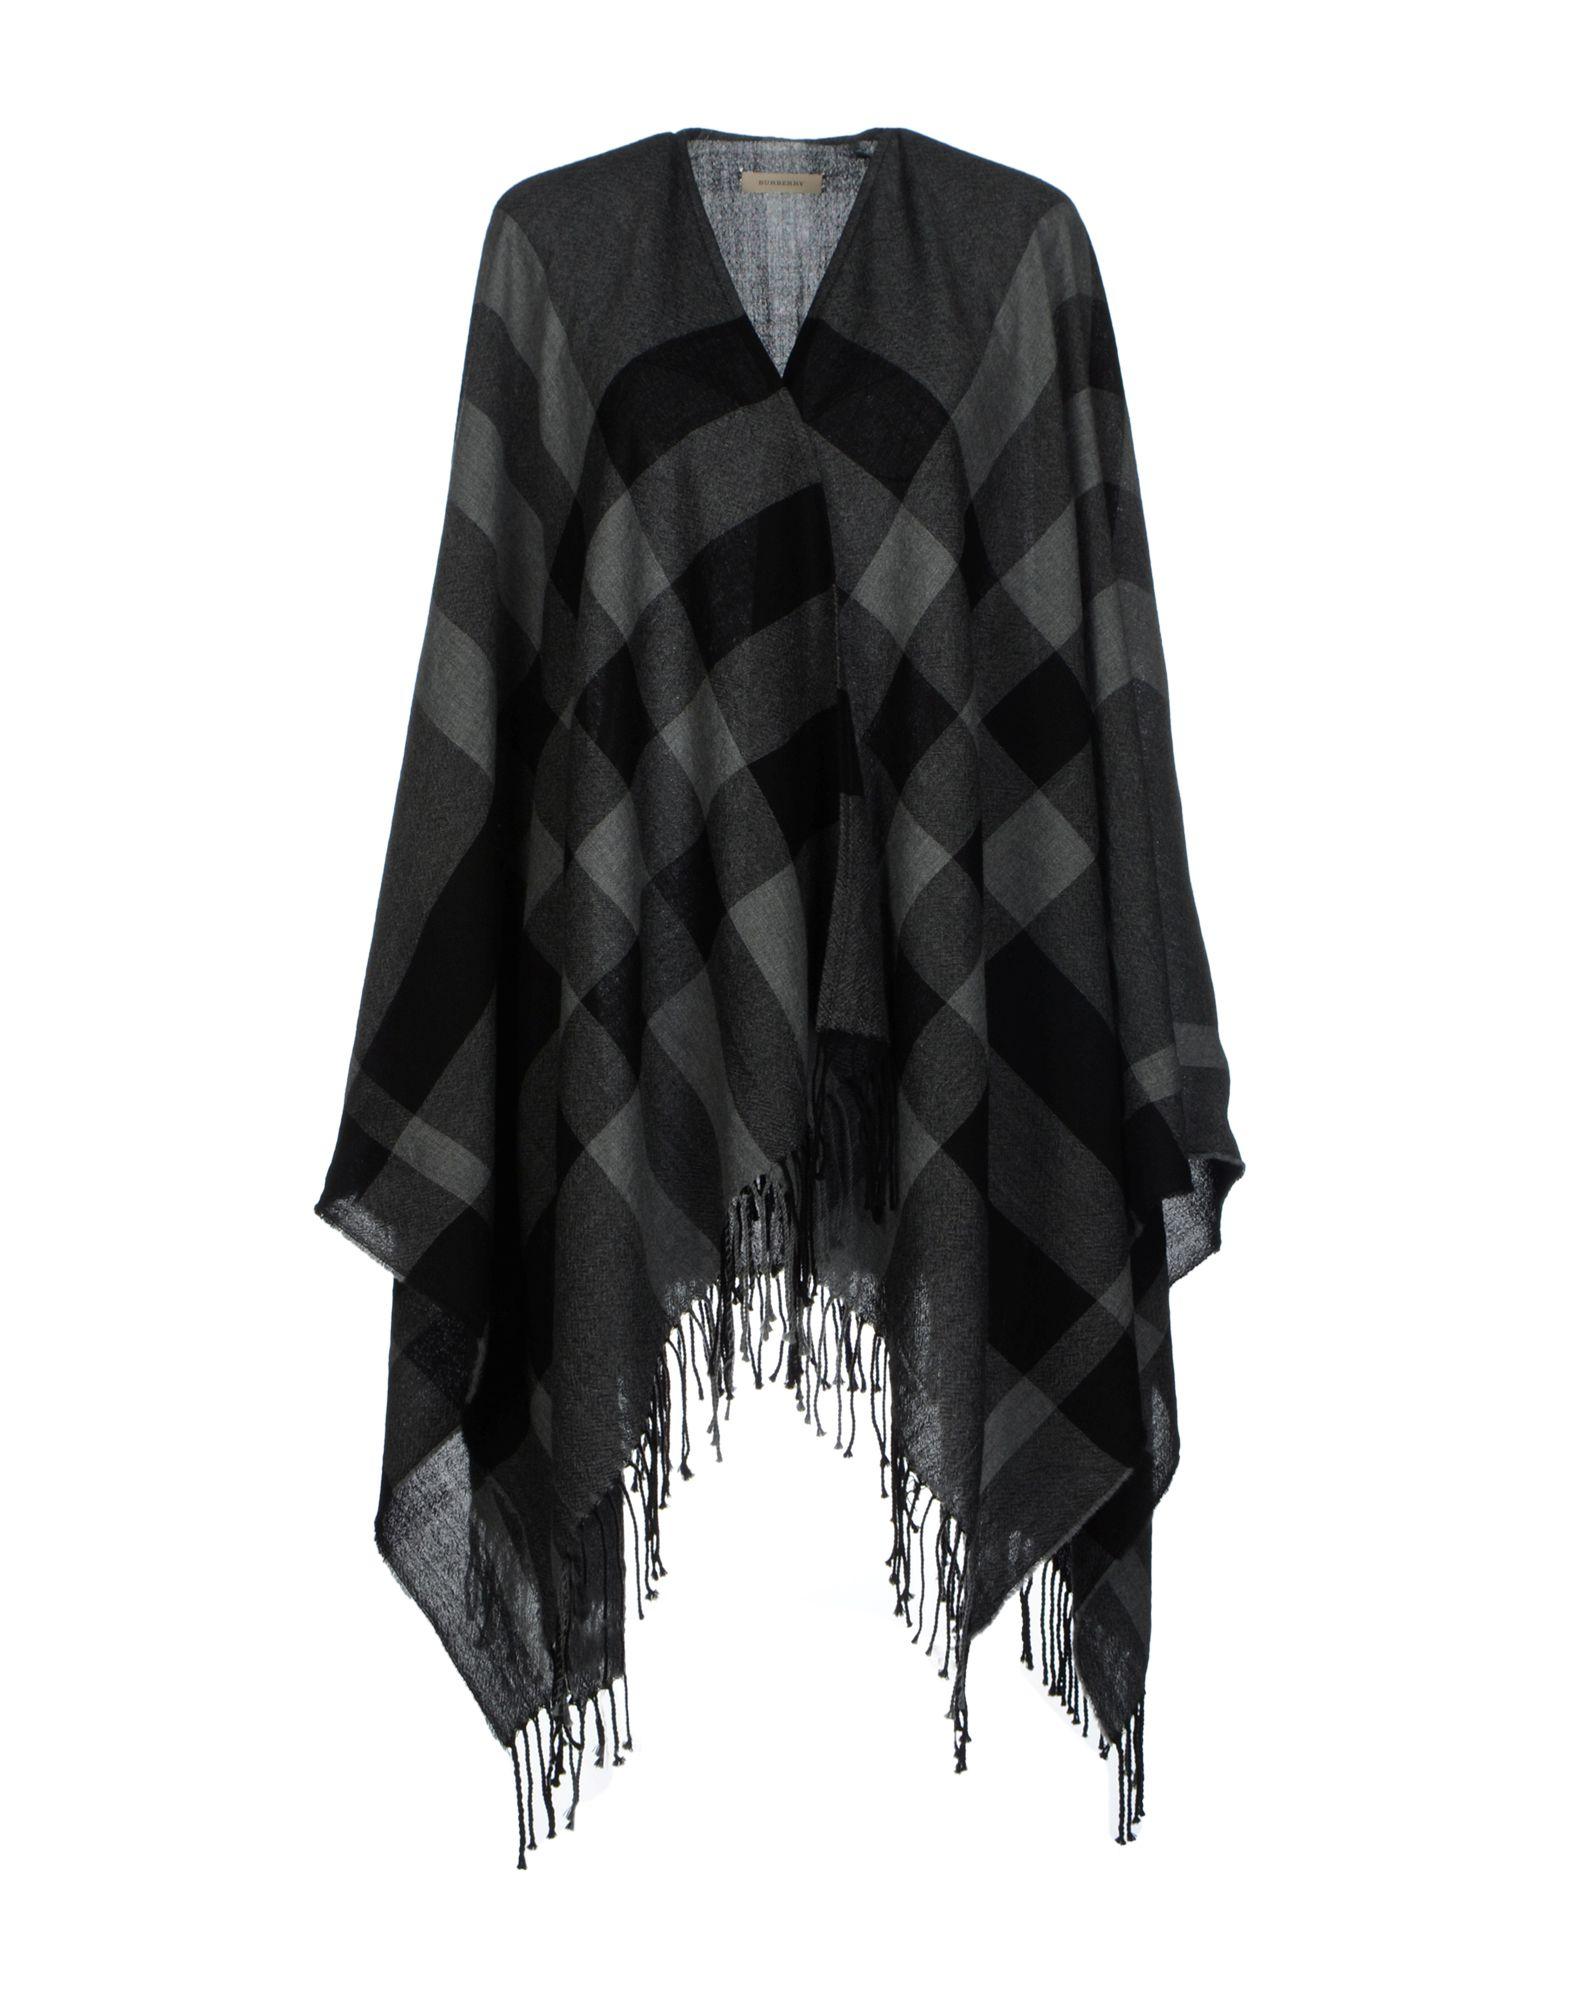 Mantella in lana merinos con fantasia Burberry sui toni del nero e del grigio, frange e scollo profondo